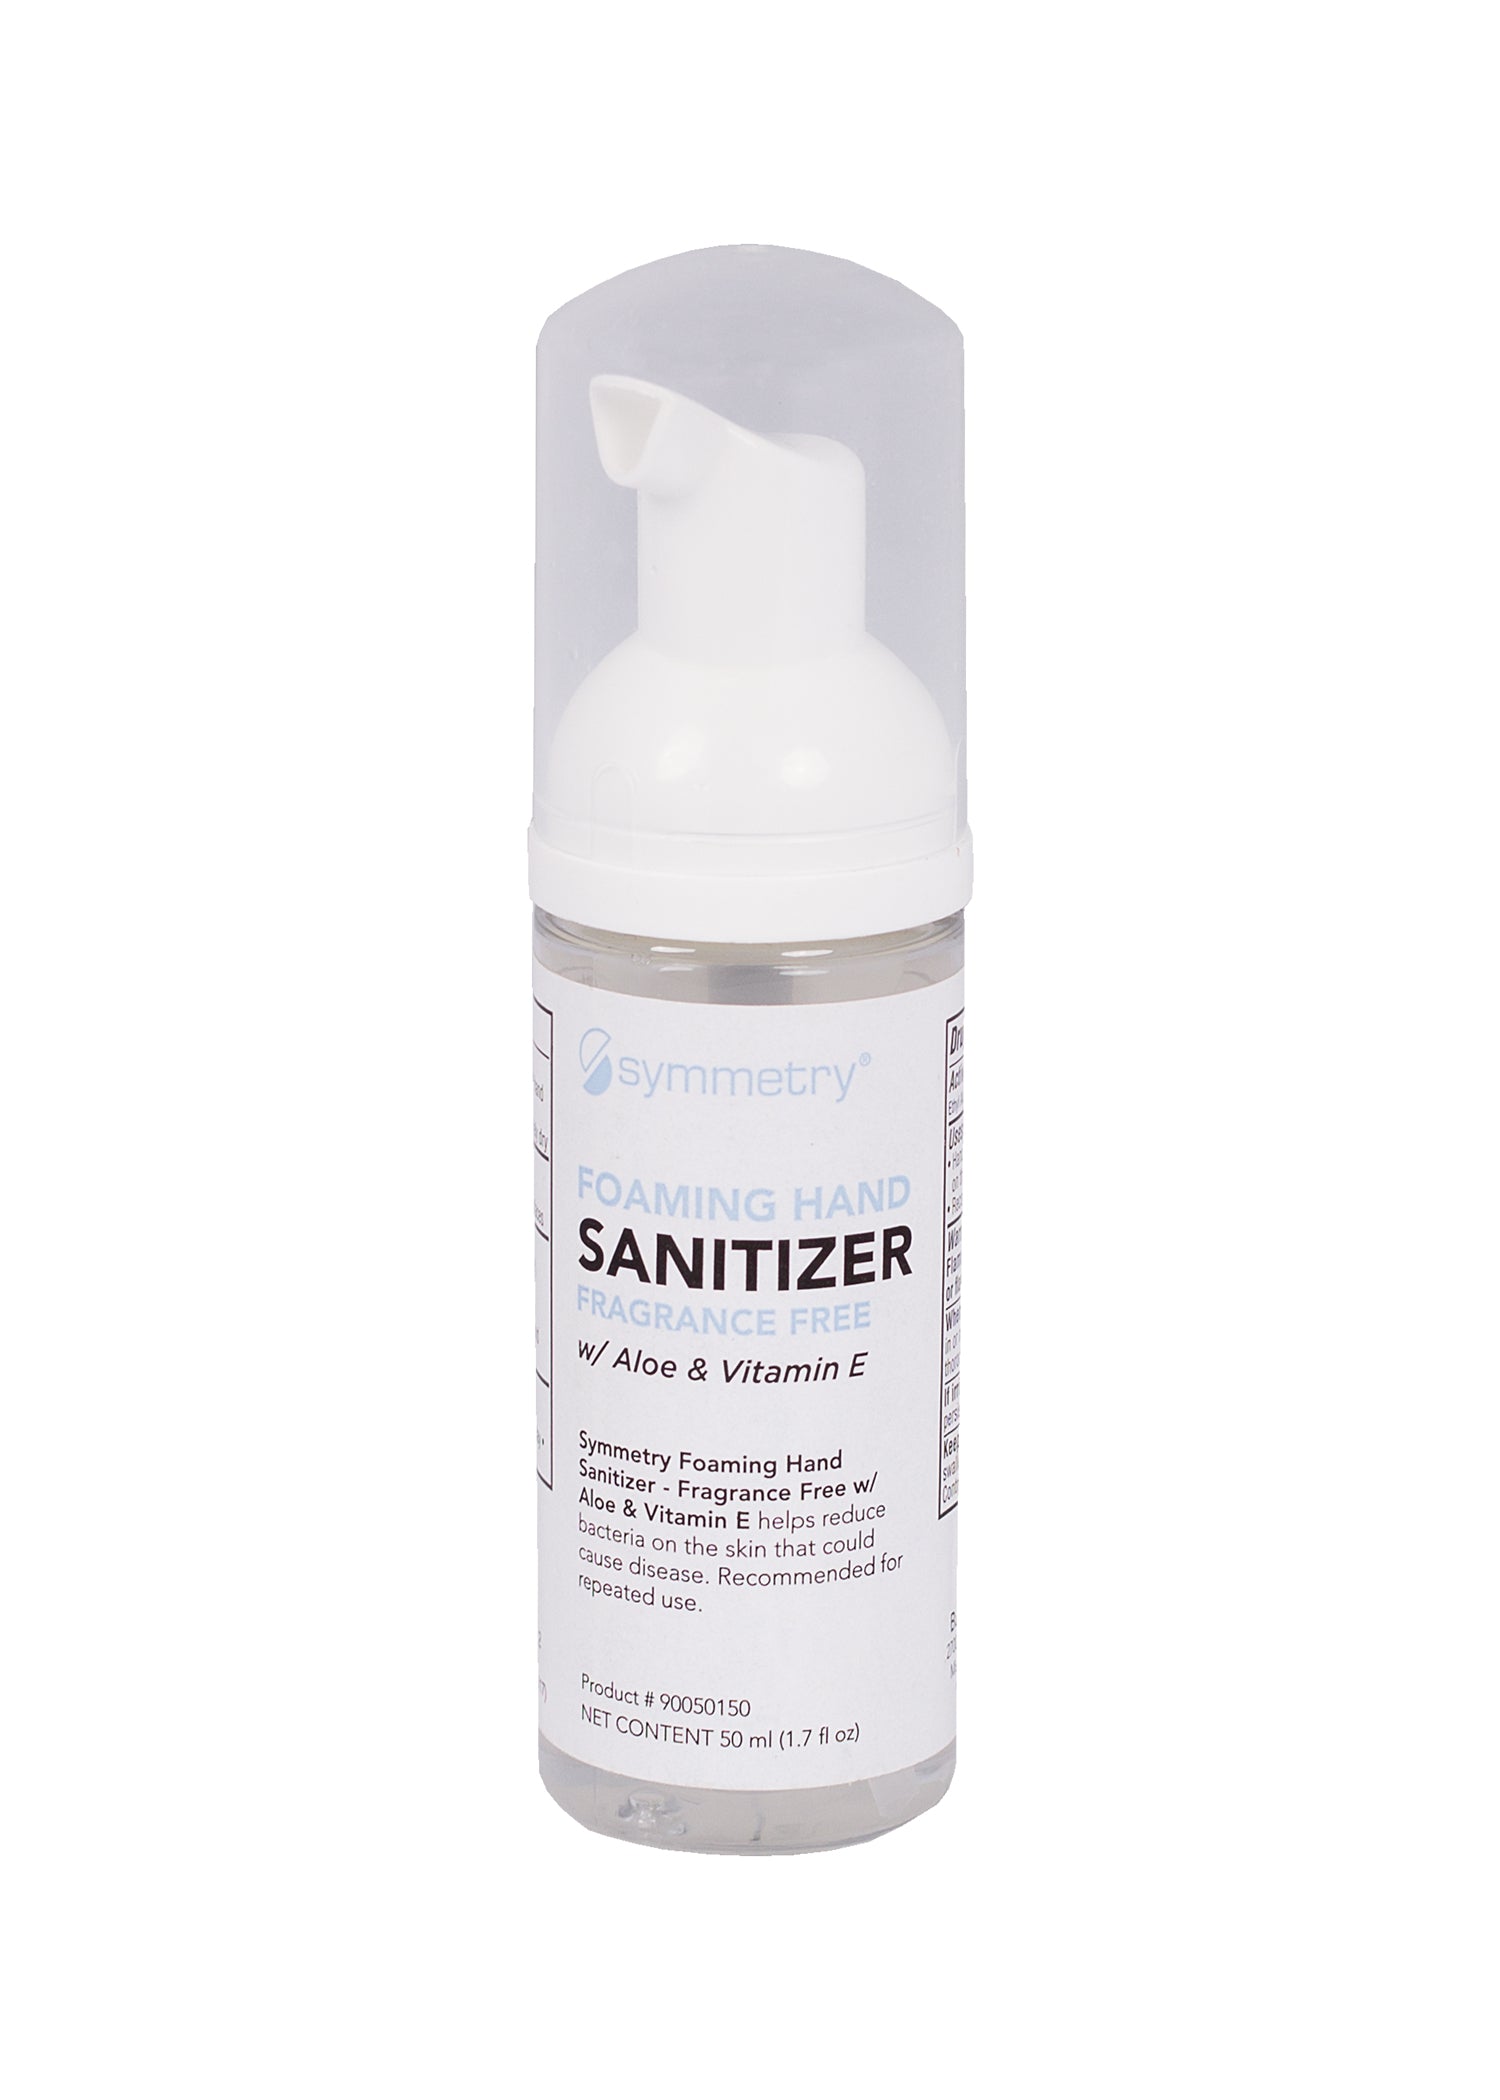 Foaming Hand Sanitizer Fragrance-Free | IRIS